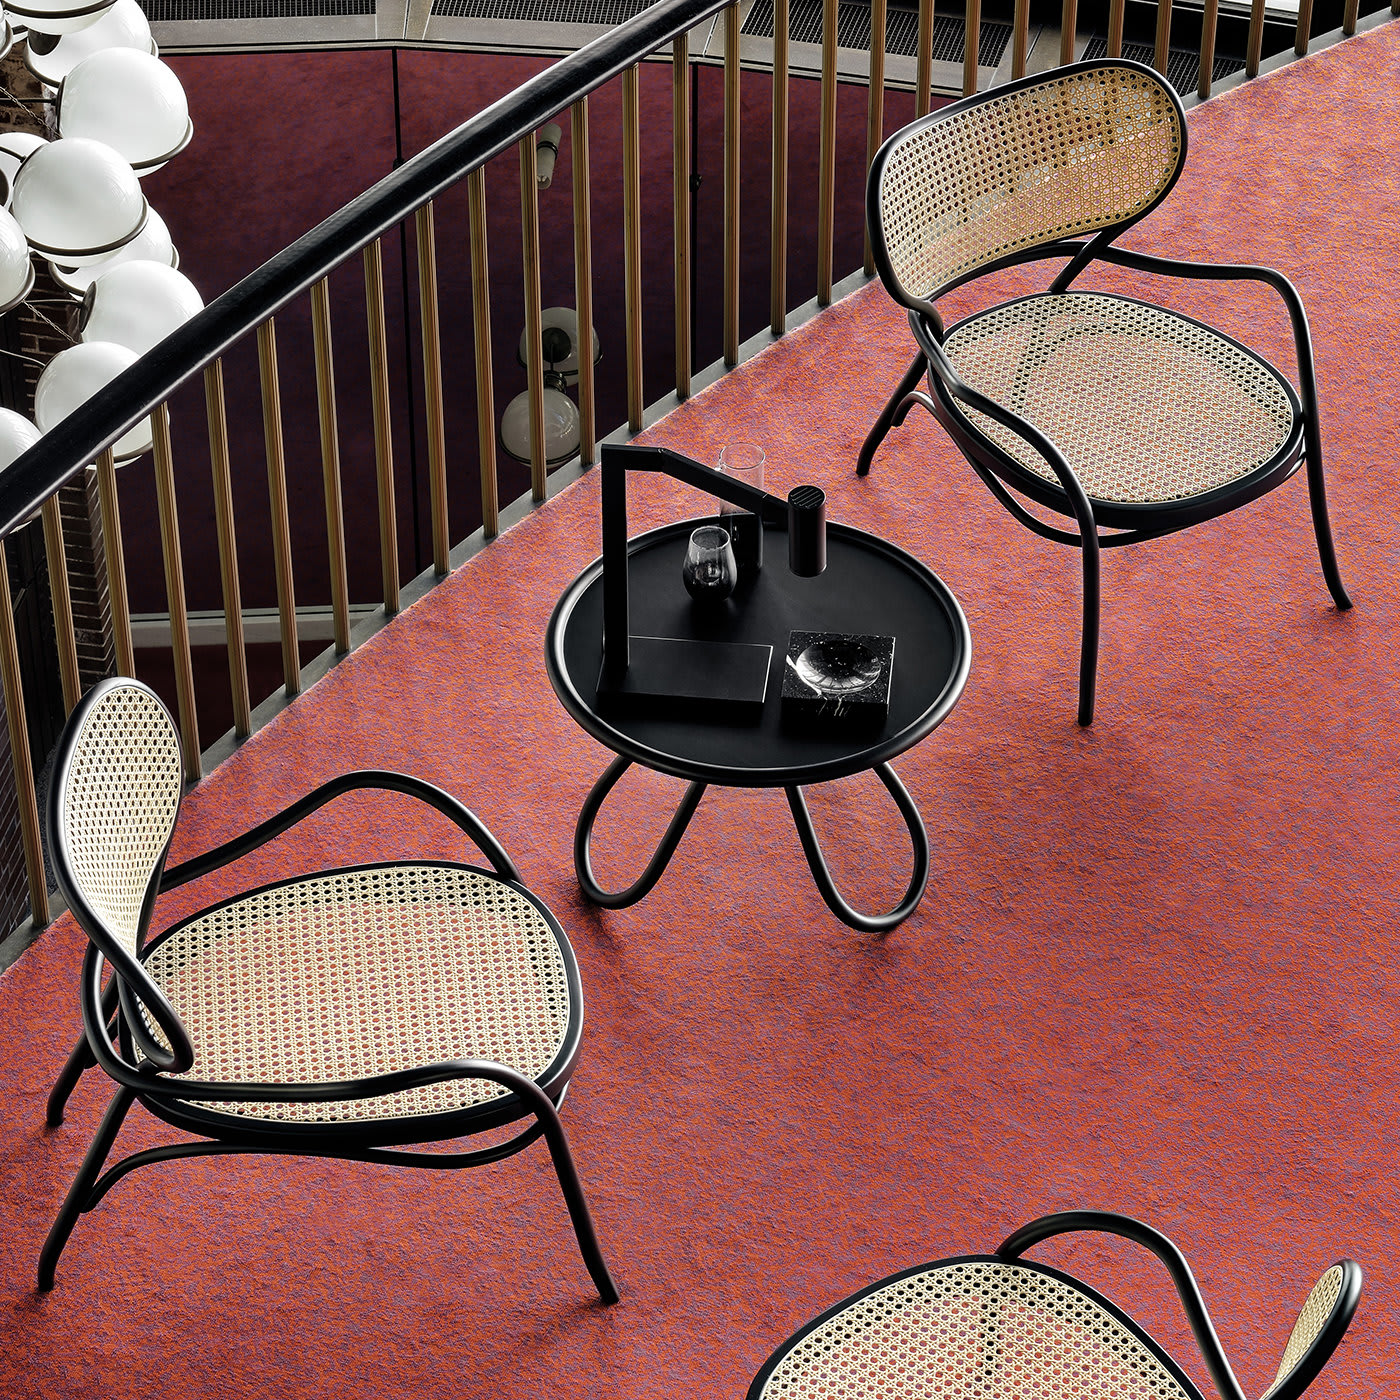 Lehnstuhl Lounge Chair by Nigel Coates - Gebrüder Thonet Vienna GmbH (GTV) – Wiener GTV Design